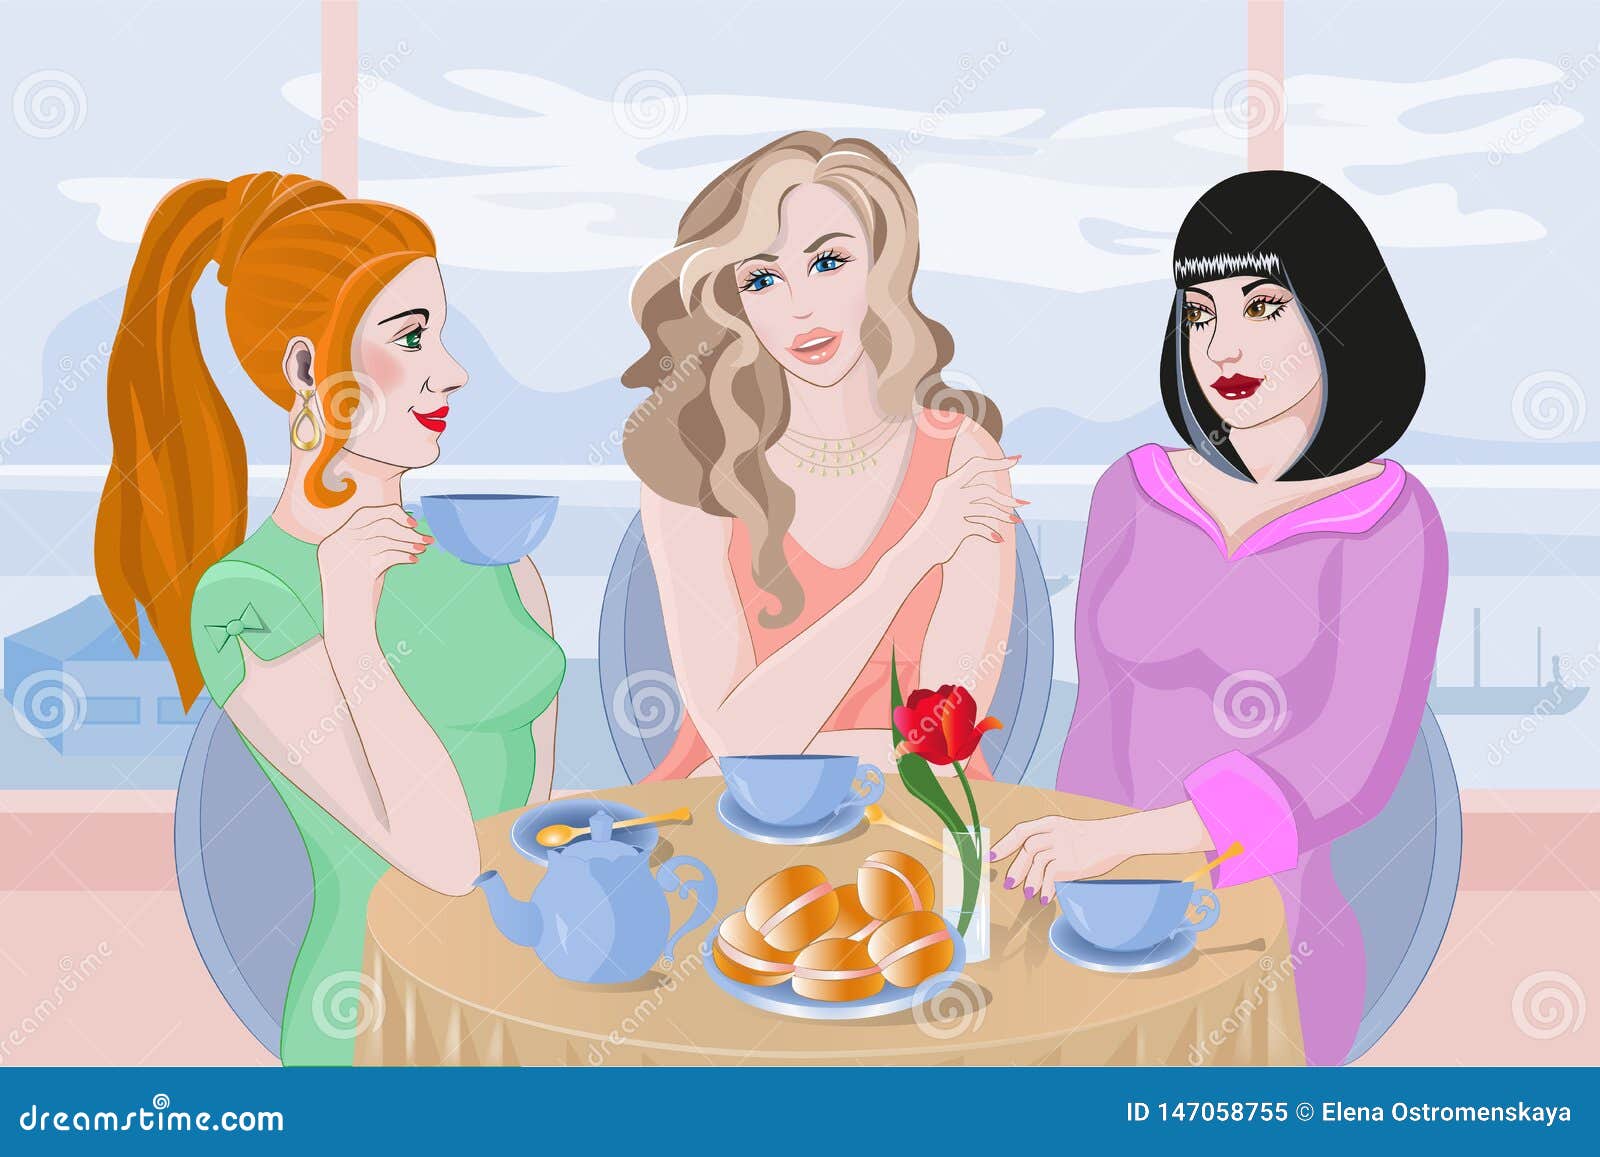 Пьет сестру друга. Чаепитие с подружками. Три девушки за столом. Три подружки в кафе. Иллюстрации подружки в кафе.